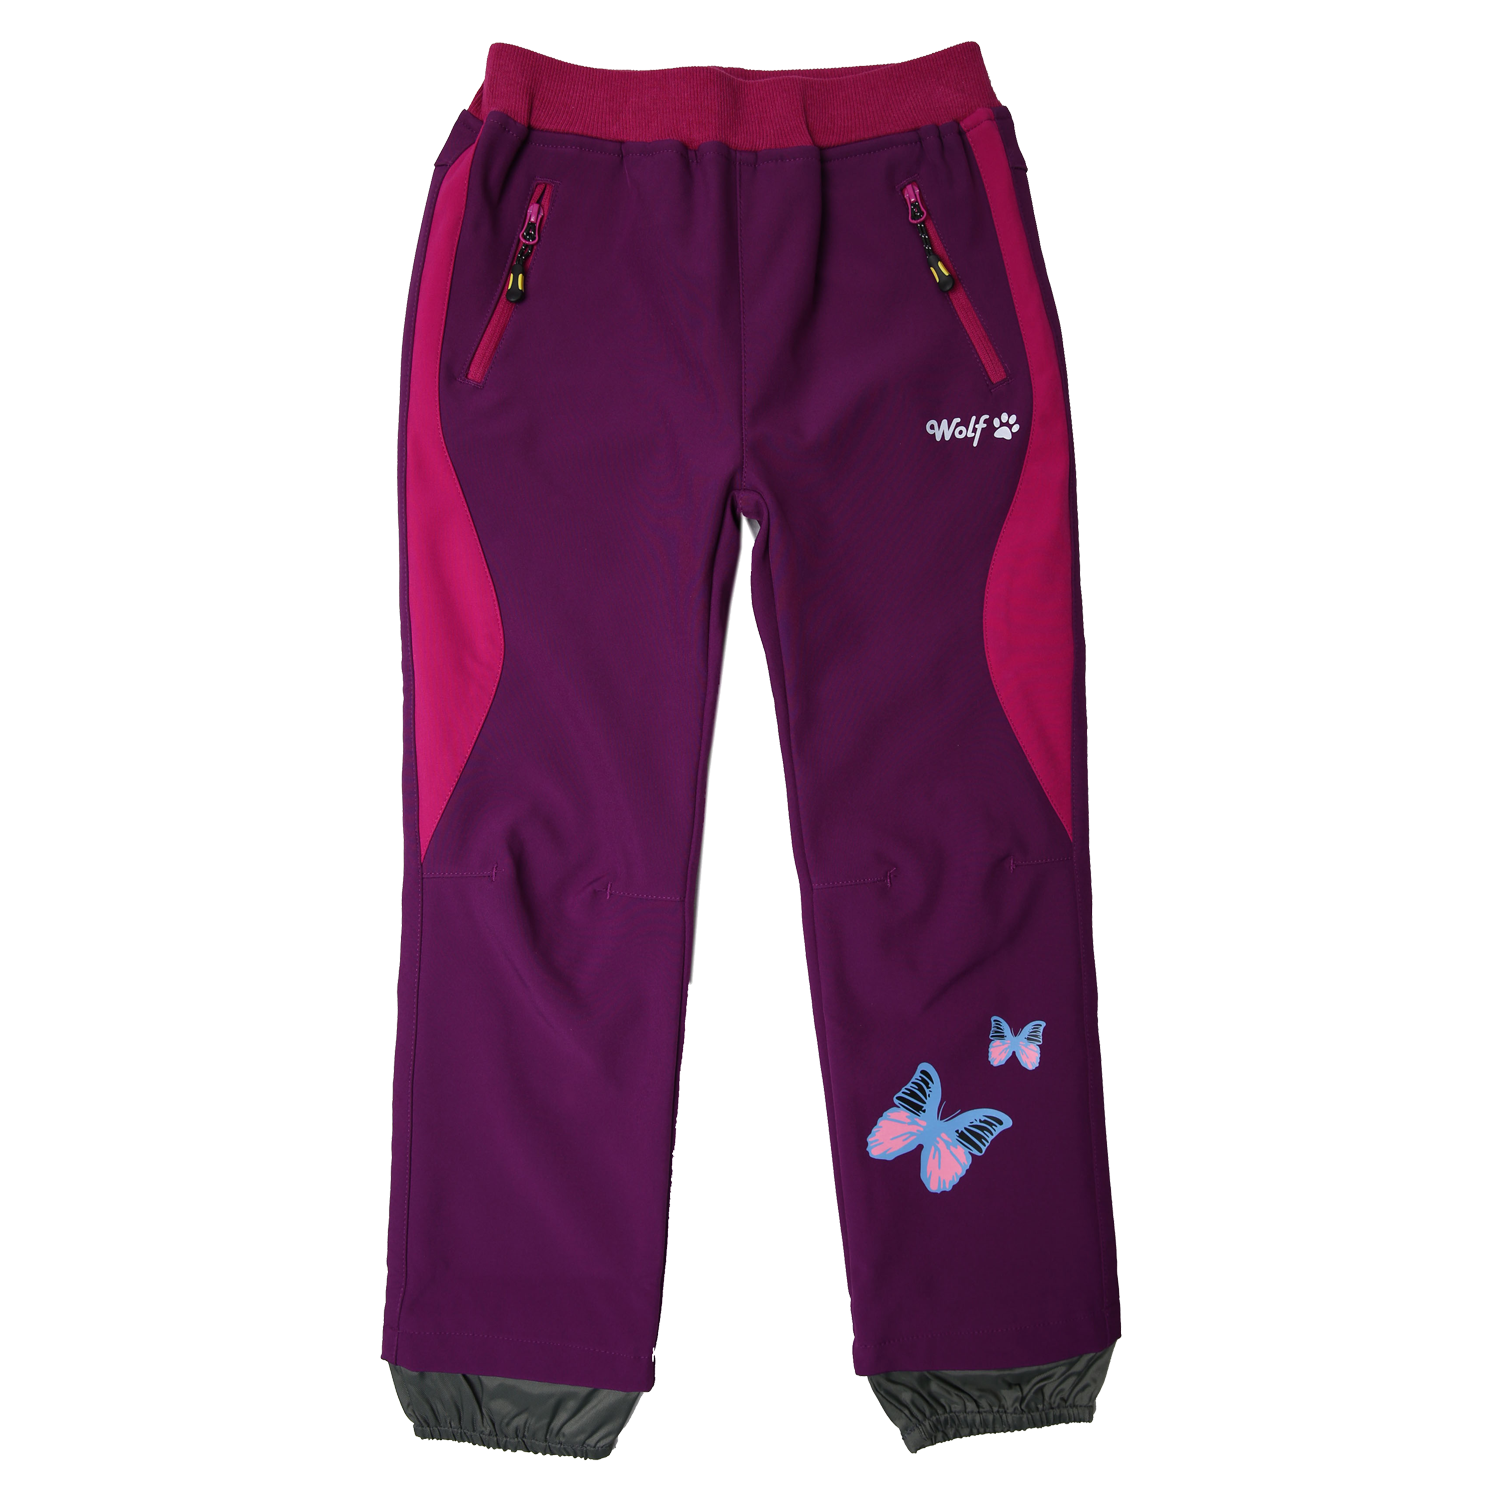 Dívčí softshellové kalhoty - Wolf B2381, fialovorůžová Barva: Fialovorůžová, Velikost: 92